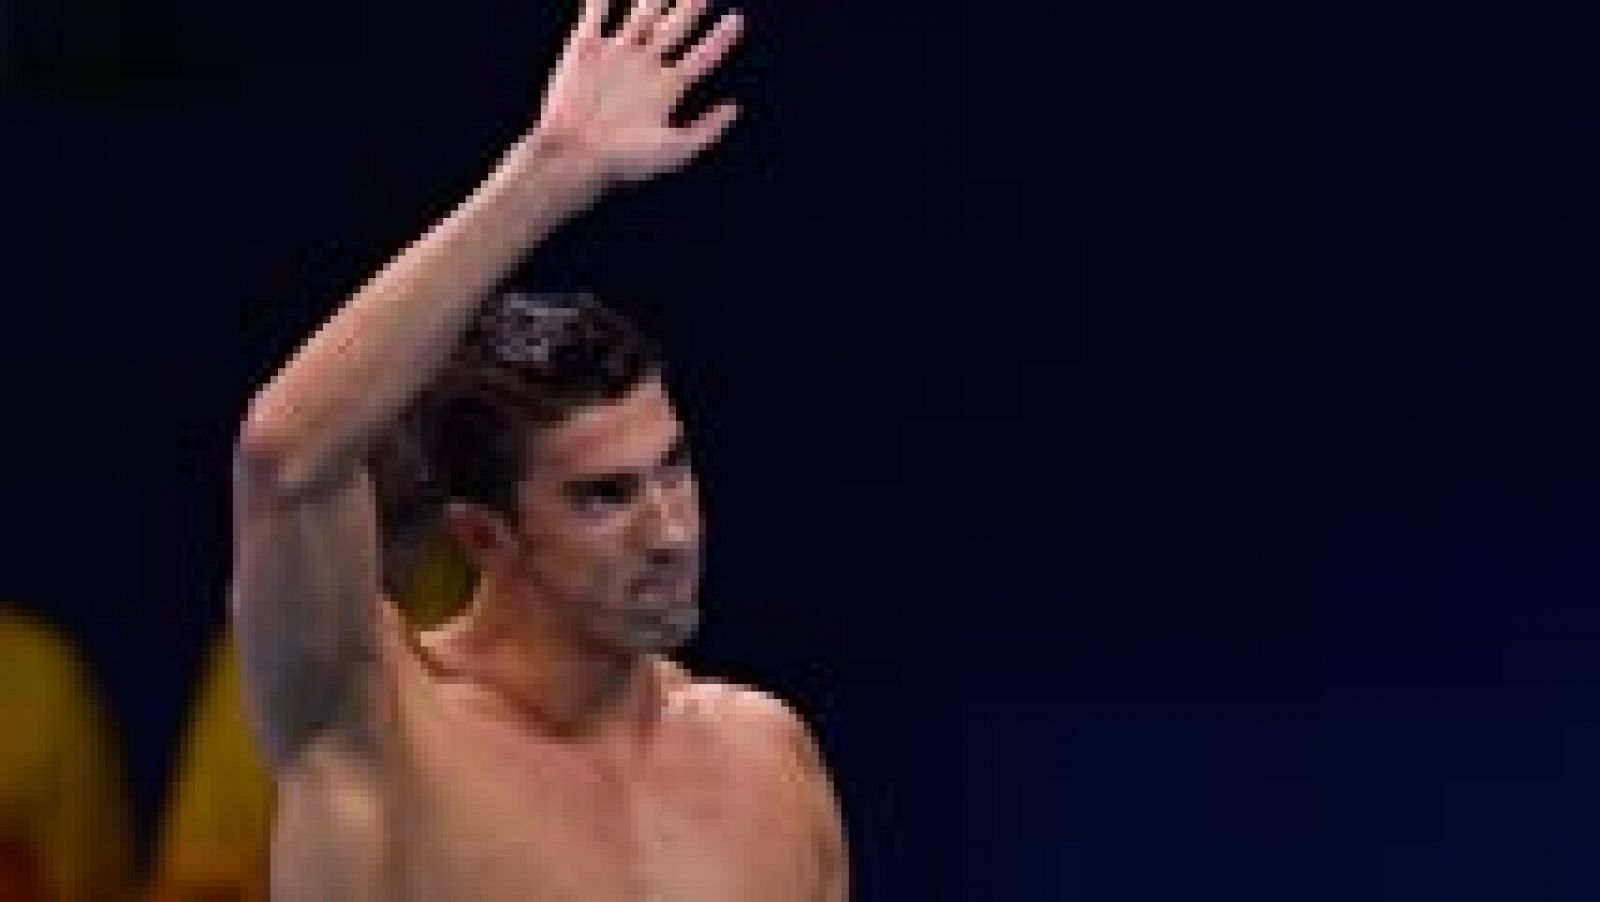 Esta vez parece que será definitiva la retirada de Michael Phelps. Ya anunció en Londres 2012 que dejaba la natación, pero luego volvió. Con 31 años acaba de decir que, esta vez si, lo deja para siempre.